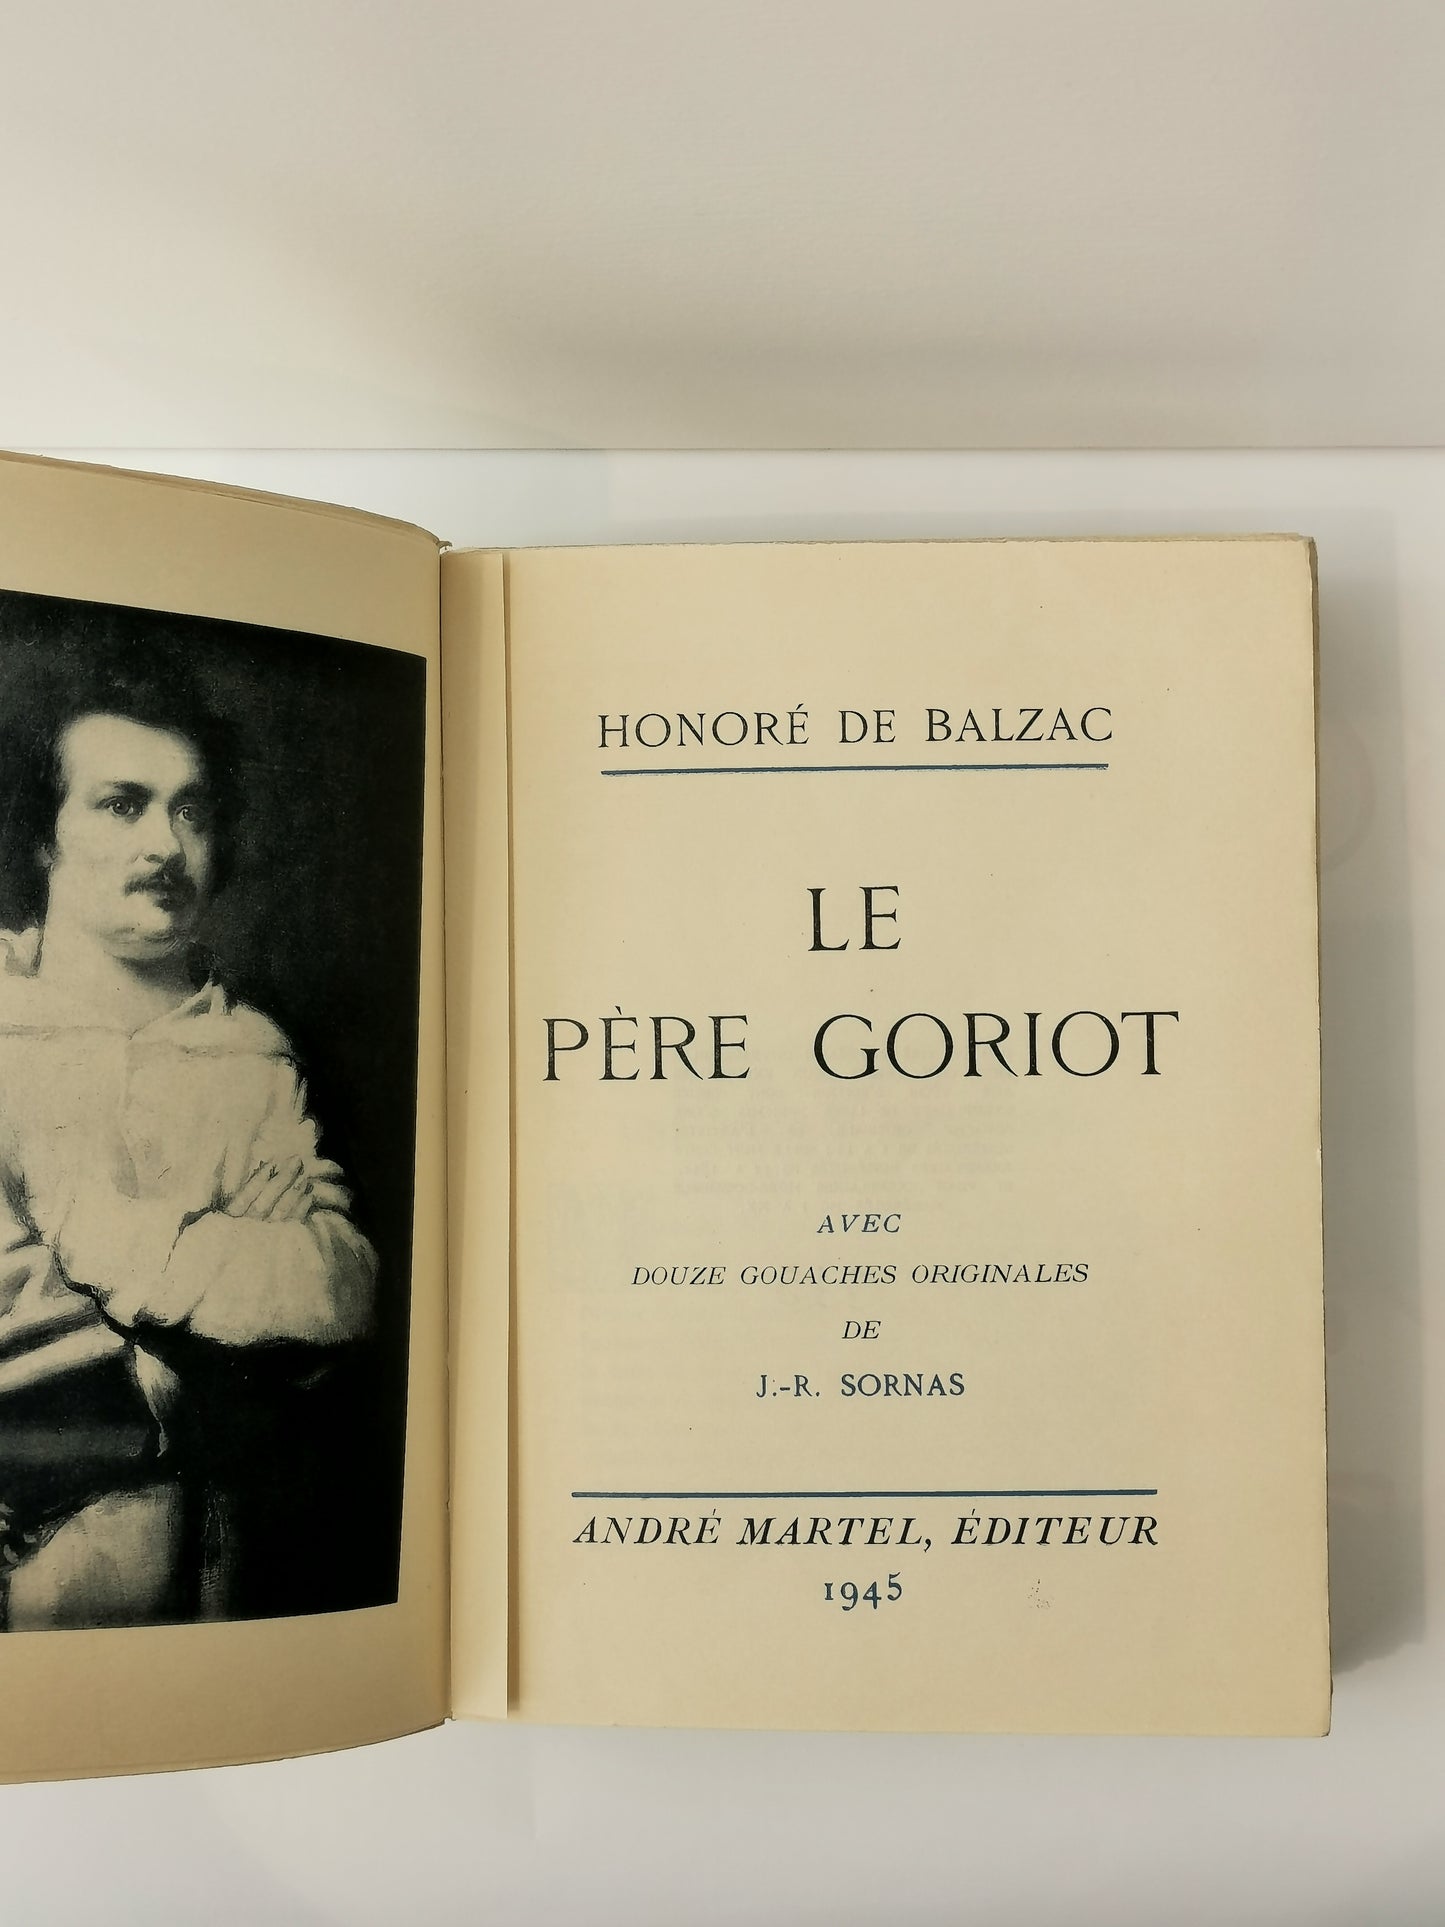 Le père Goriot, Honoré de Balzac, avec douze gouaches originales de J.-R. Sornas, André Martel, 1945.